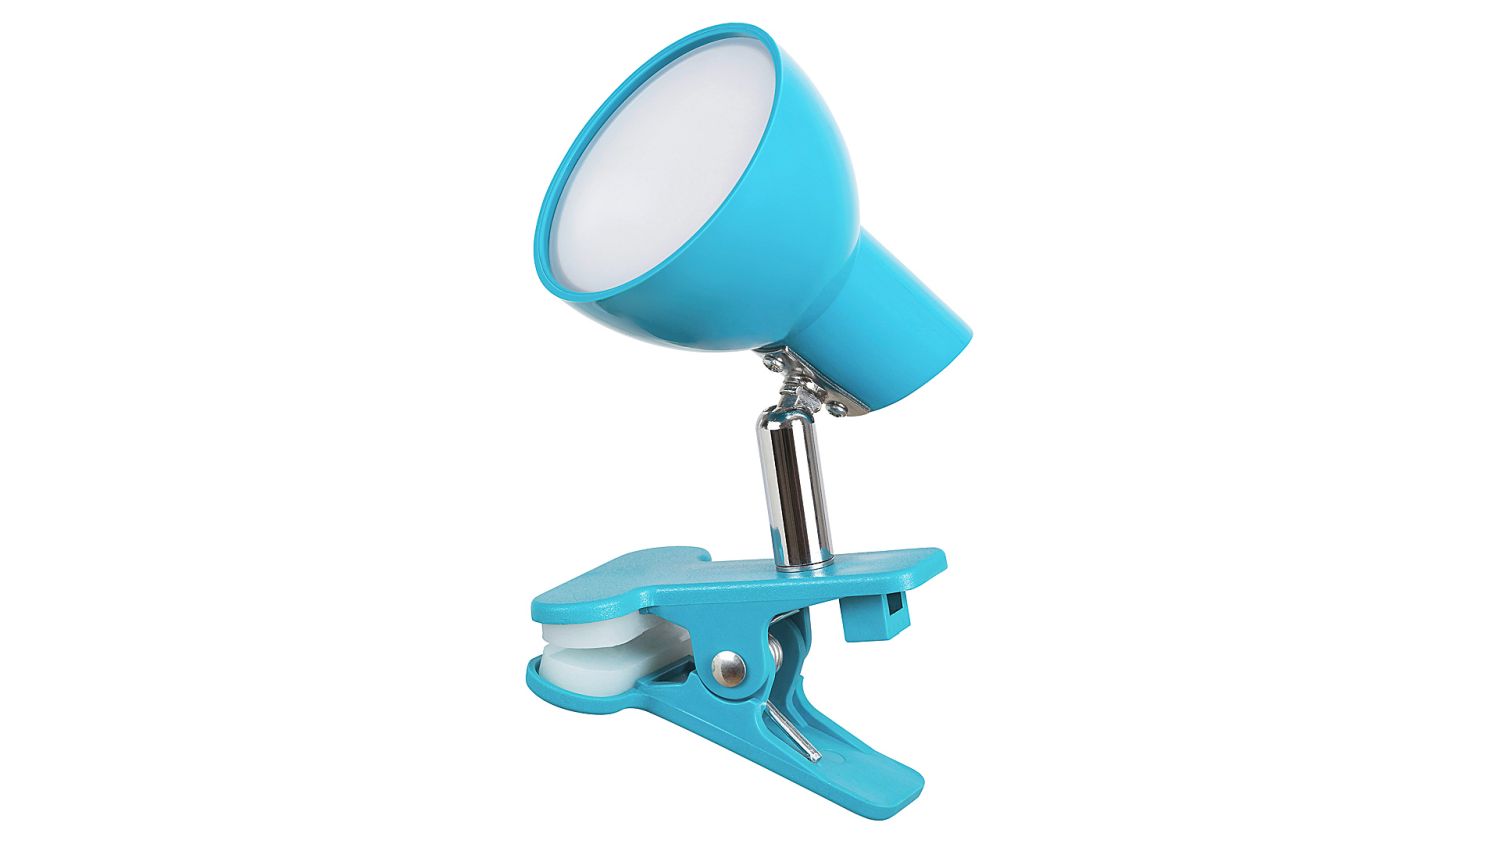 LED Tischlampe Blau mit Schalter 5W Klemmen Kinder